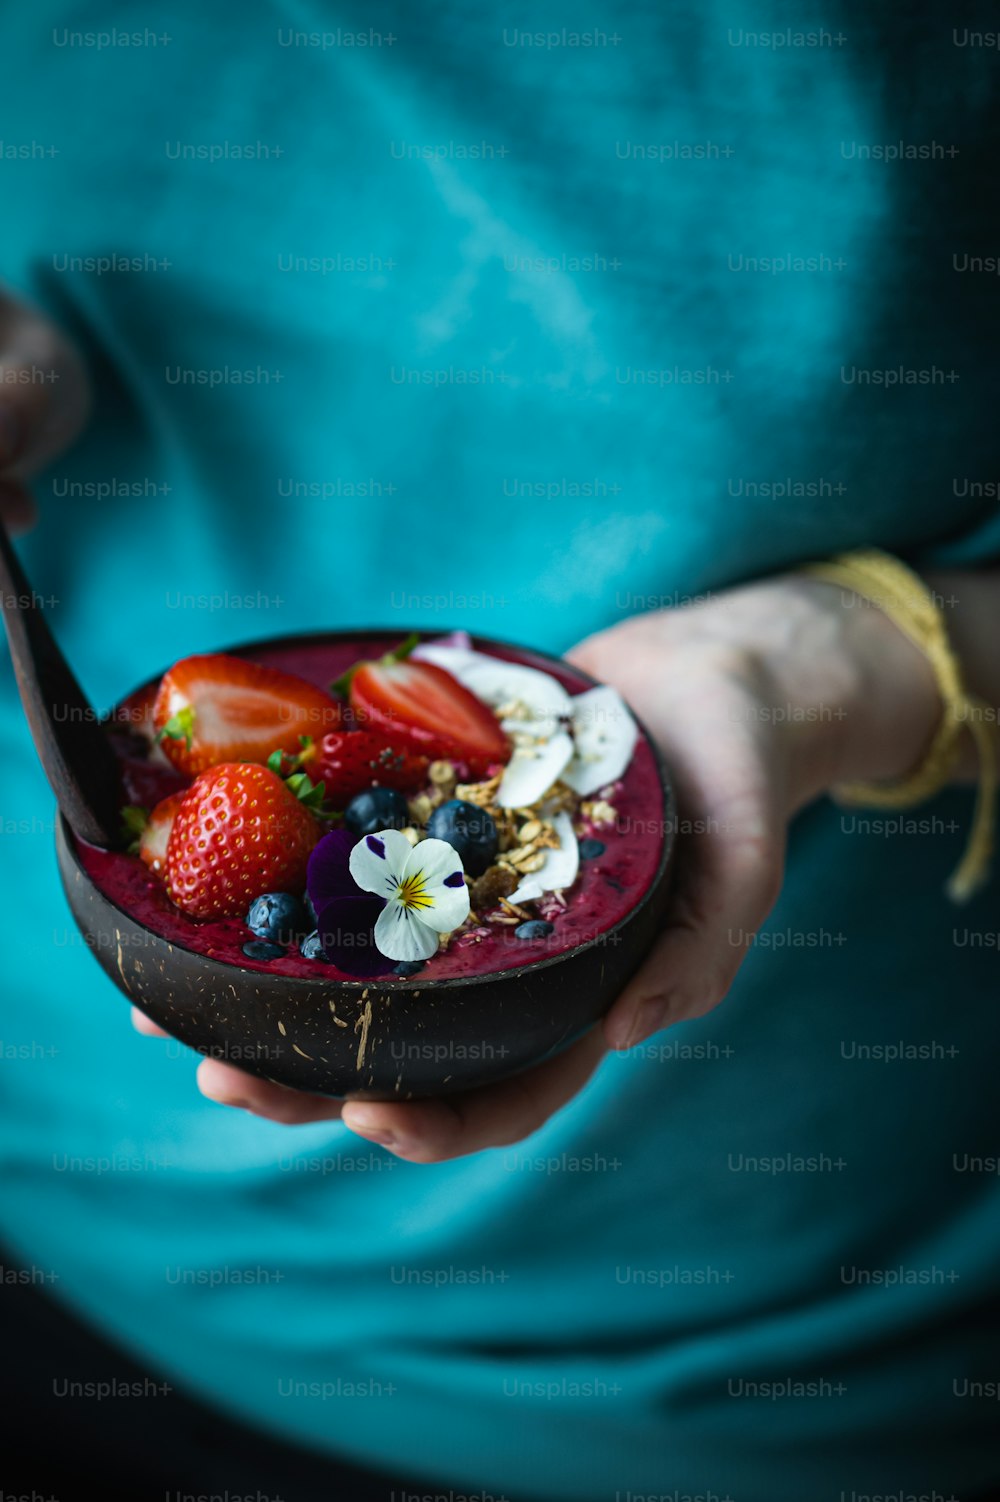 Una persona sosteniendo un tazón de fruta con una cuchara en él